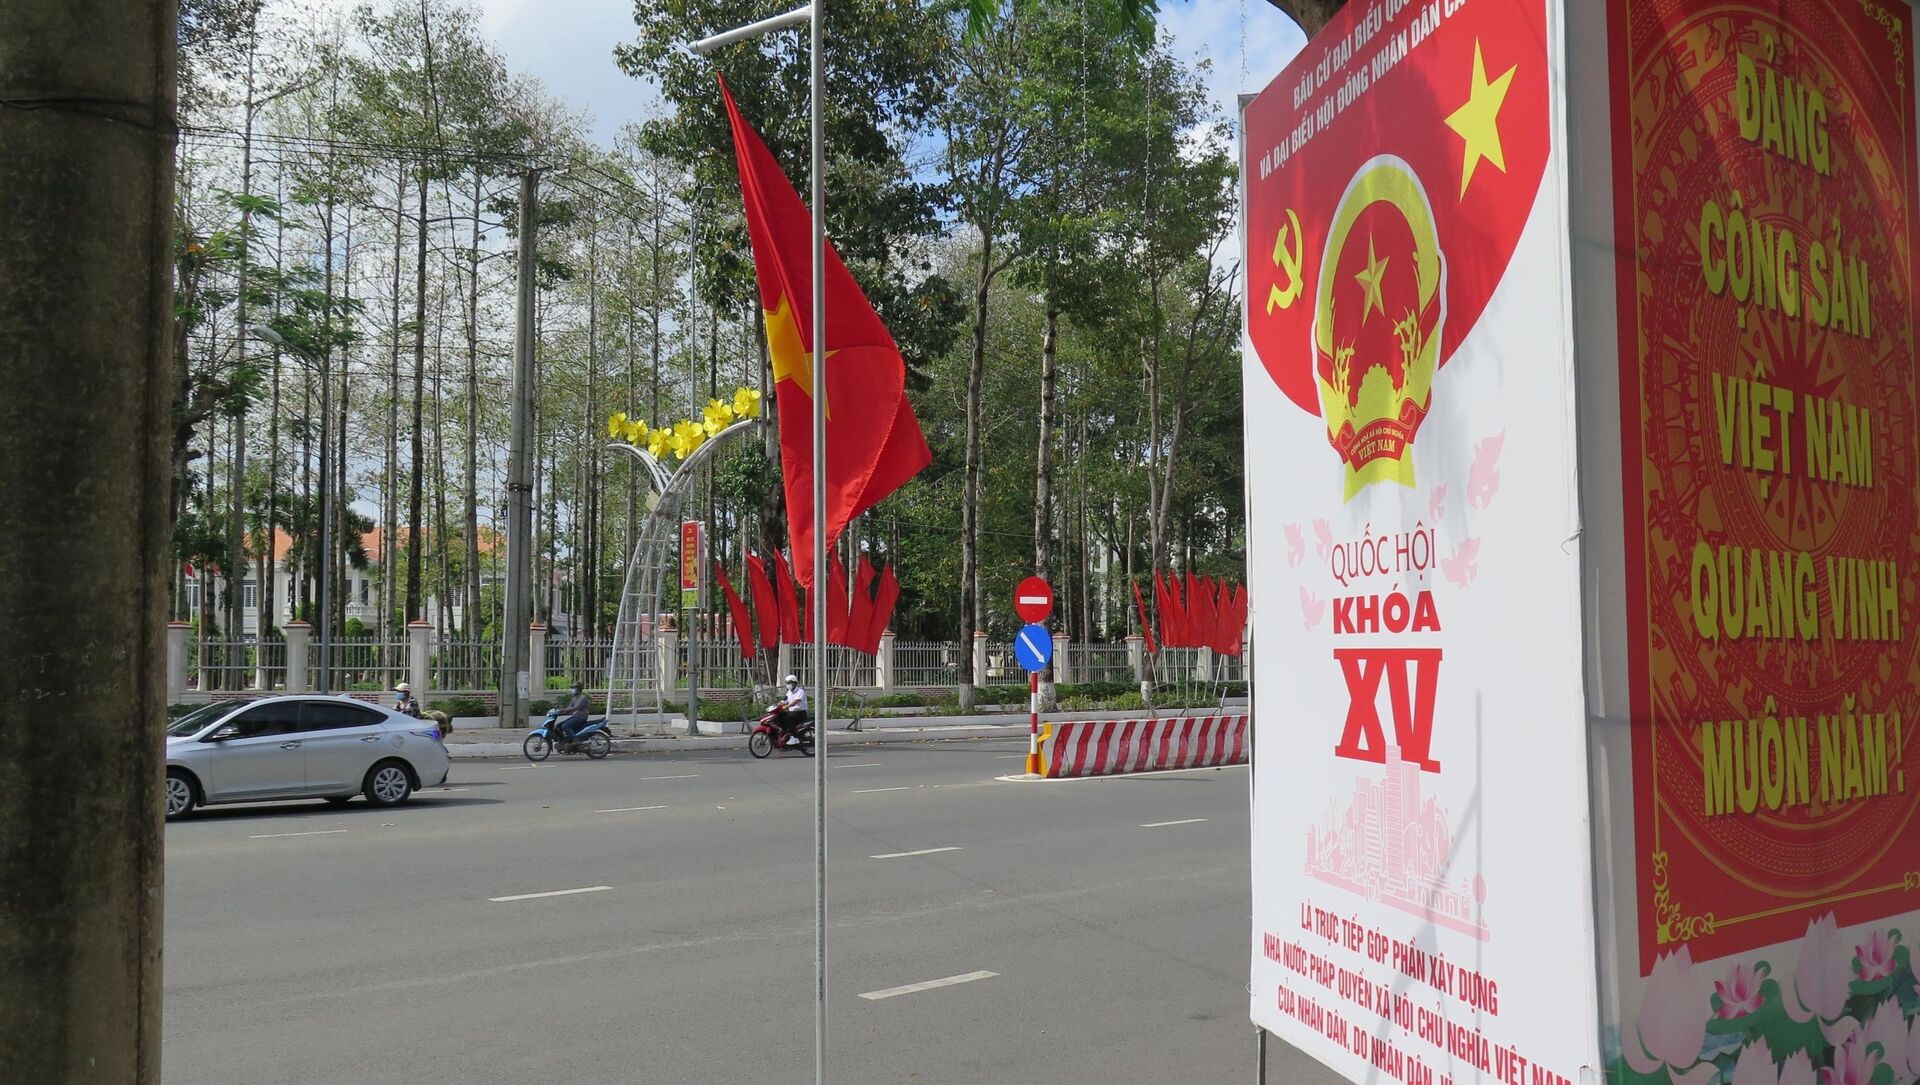 Băng rôn, khẩu hiệu tuyên truyền đã được treo ở các tuyến đường và địa điểm công cộng ở Cà Mau. - Sputnik Việt Nam, 1920, 24.05.2021